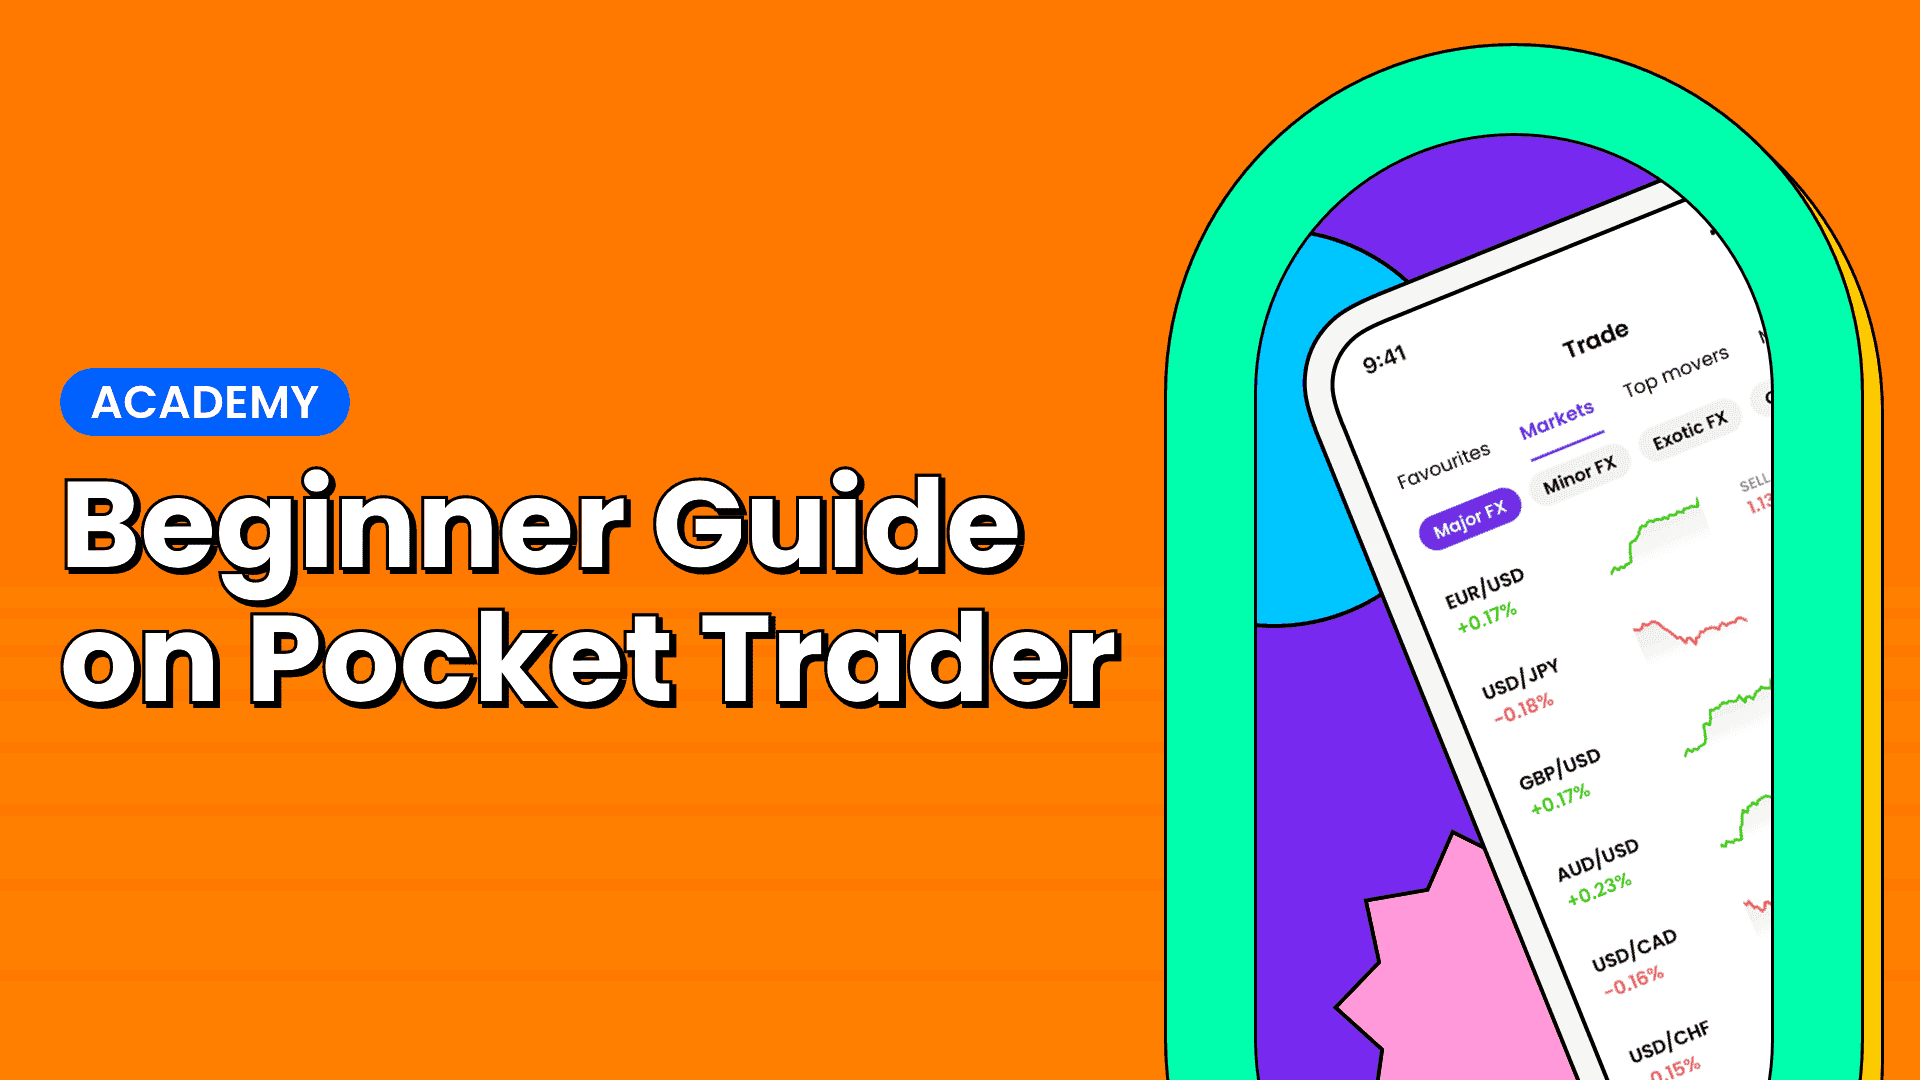 Beginner-Guide-on-Pocket-Trader-thumbnail-6yplw.png